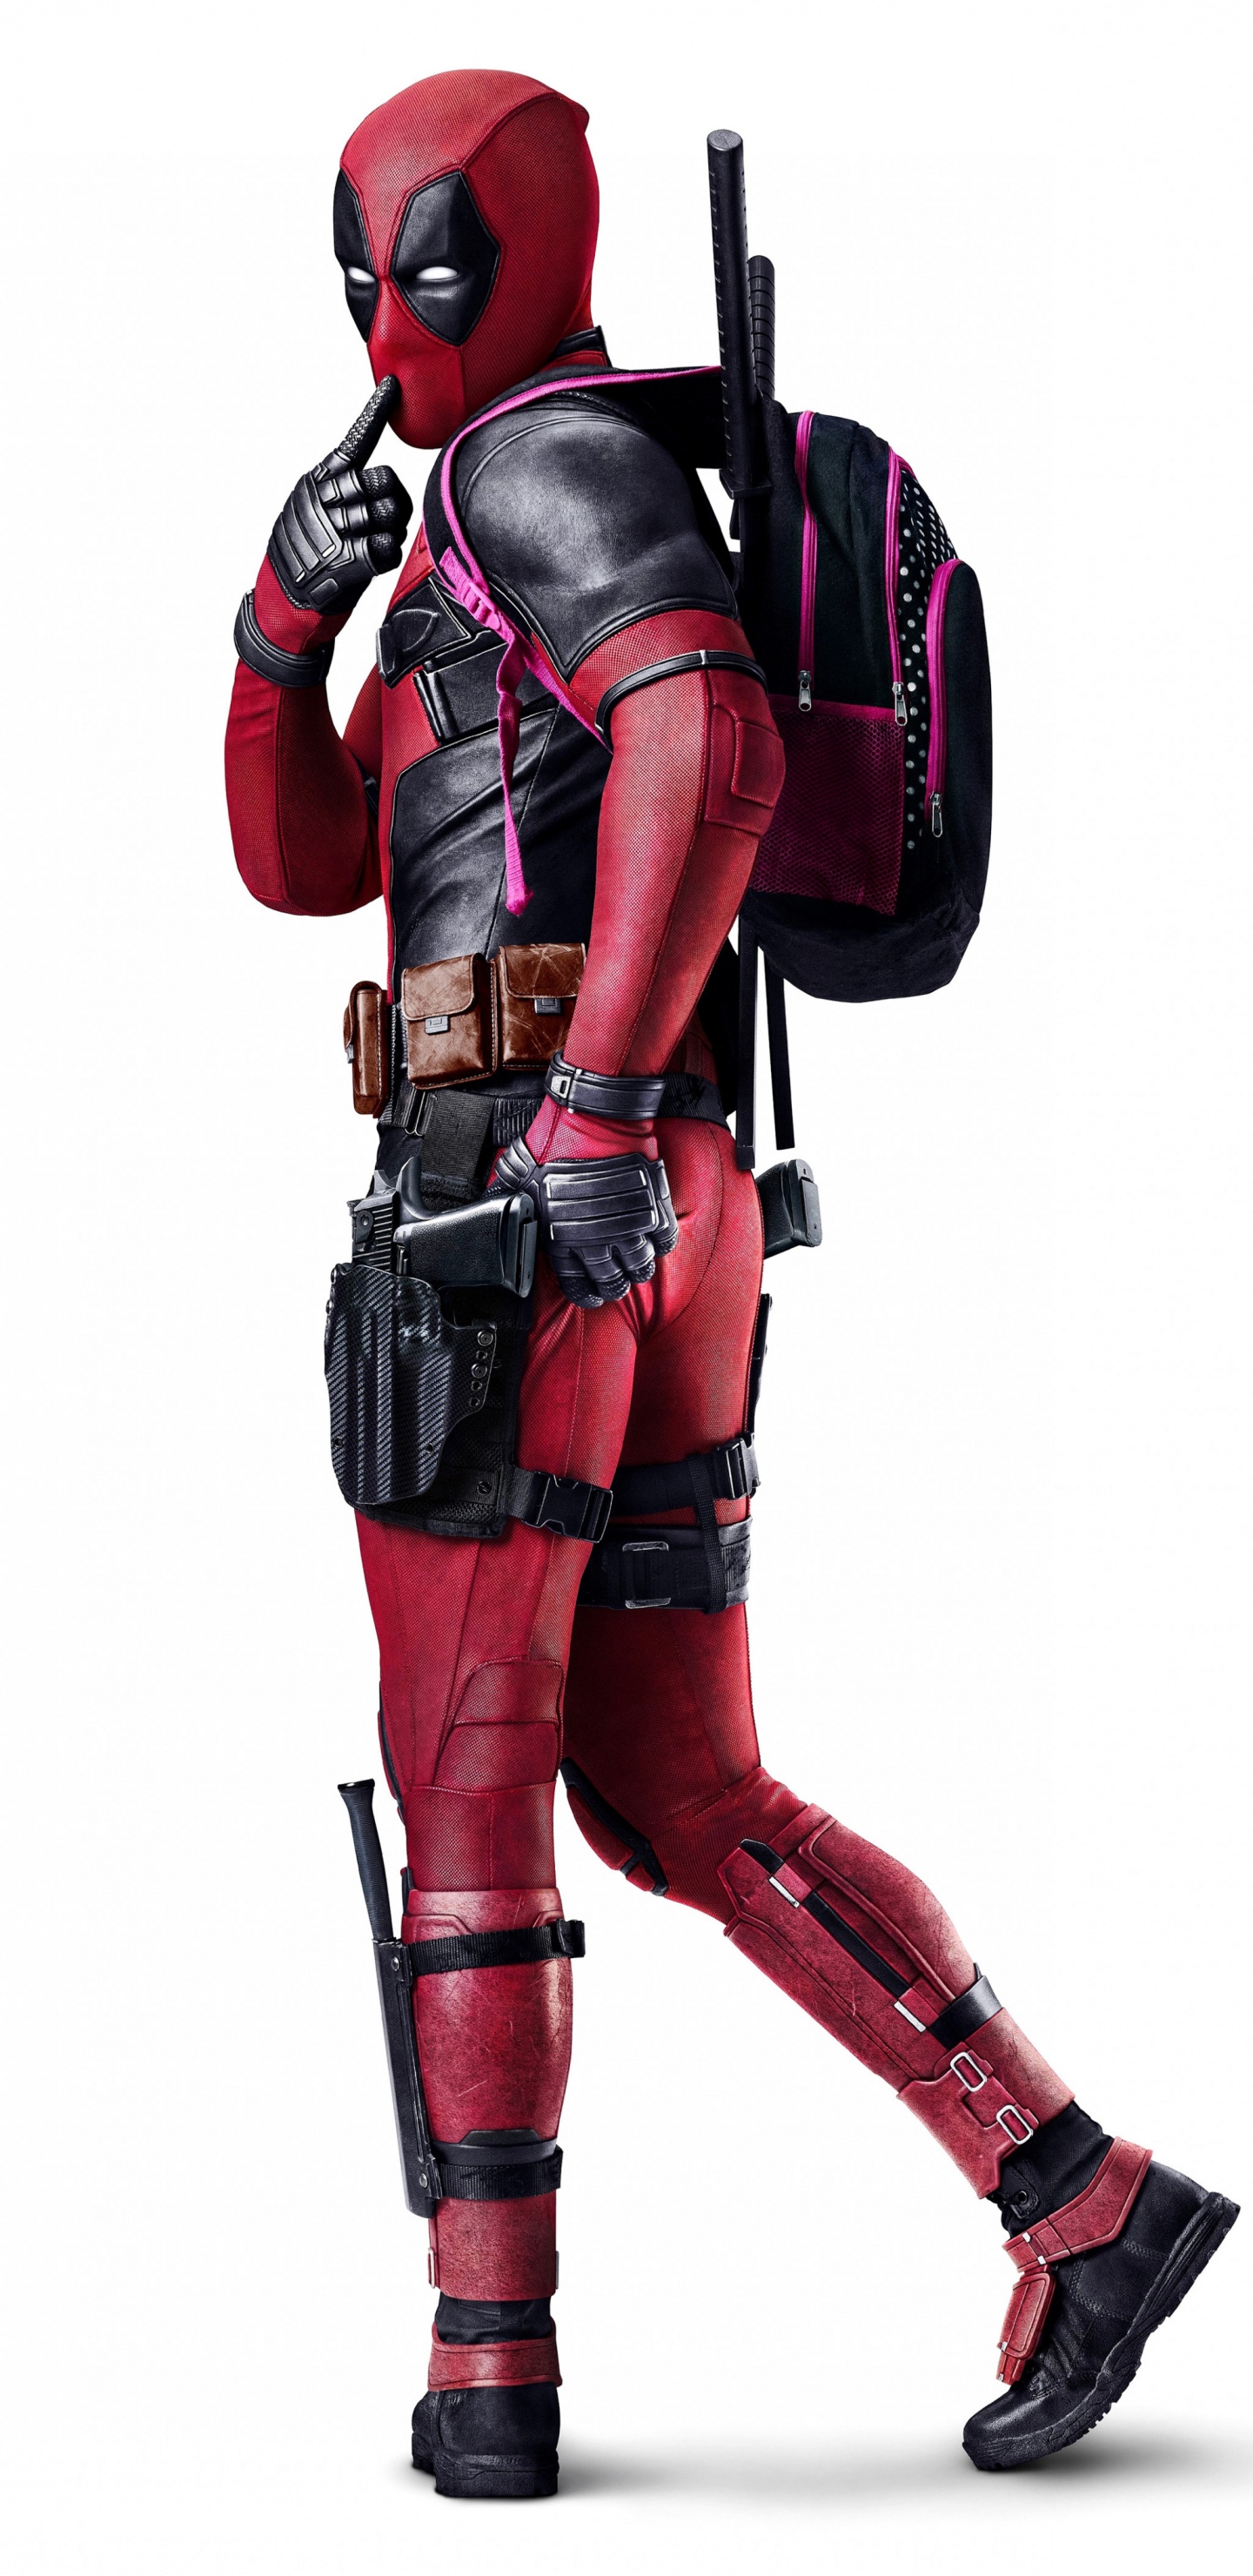 Deadpool, Personaje de Ficción, x Men, Cartel, Marvel Comics. Wallpaper in 1440x2960 Resolution